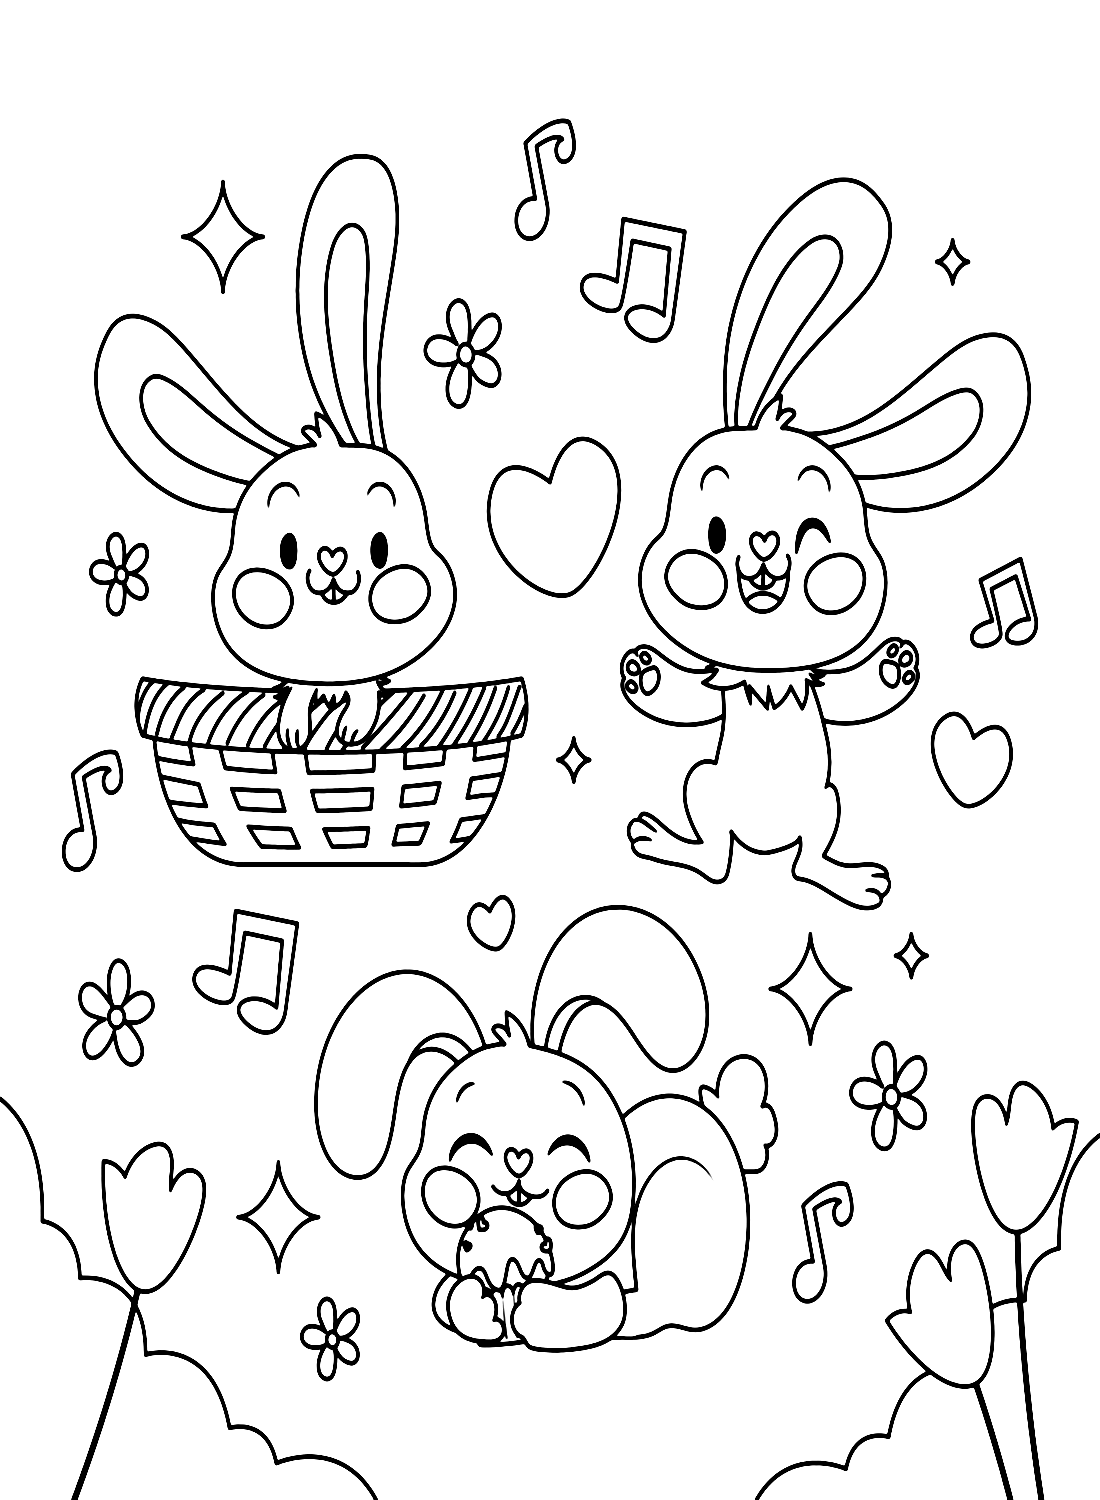 Drie konijnen genieten van muziek van Rabbit